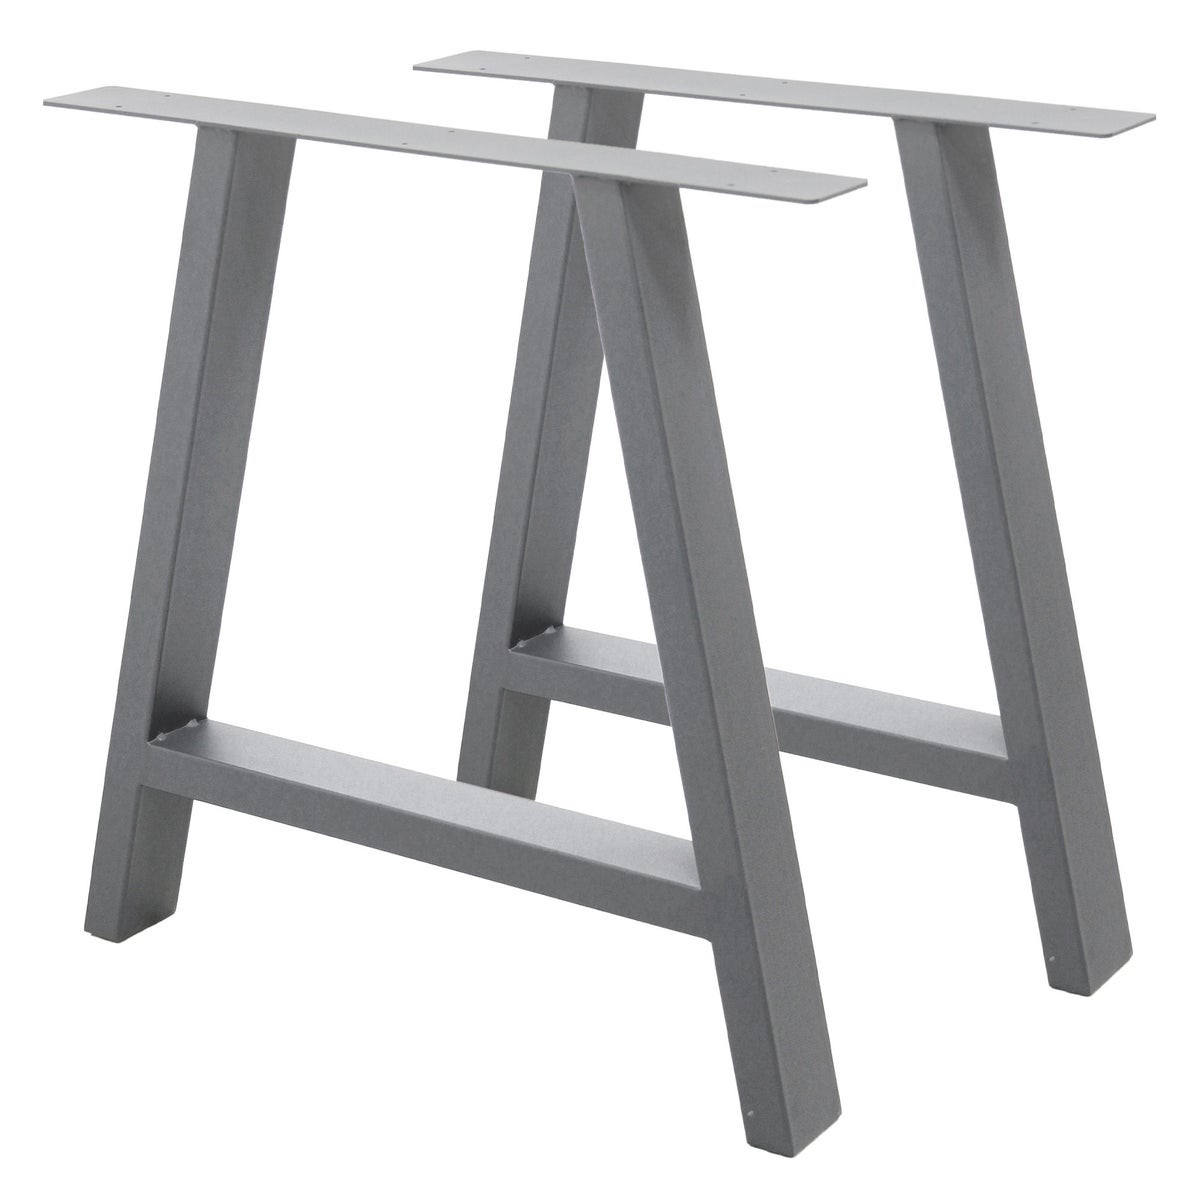 ECD Germany 2x Tischbeine A-Form A-Design, 70 x 72 cm, Grau, aus pulverbeschichtetem Stahl, Industriedesign, Metall Tischkufen Tischuntergestell Tischgestell Möbelfüße, für Esstisch Schreibtisch